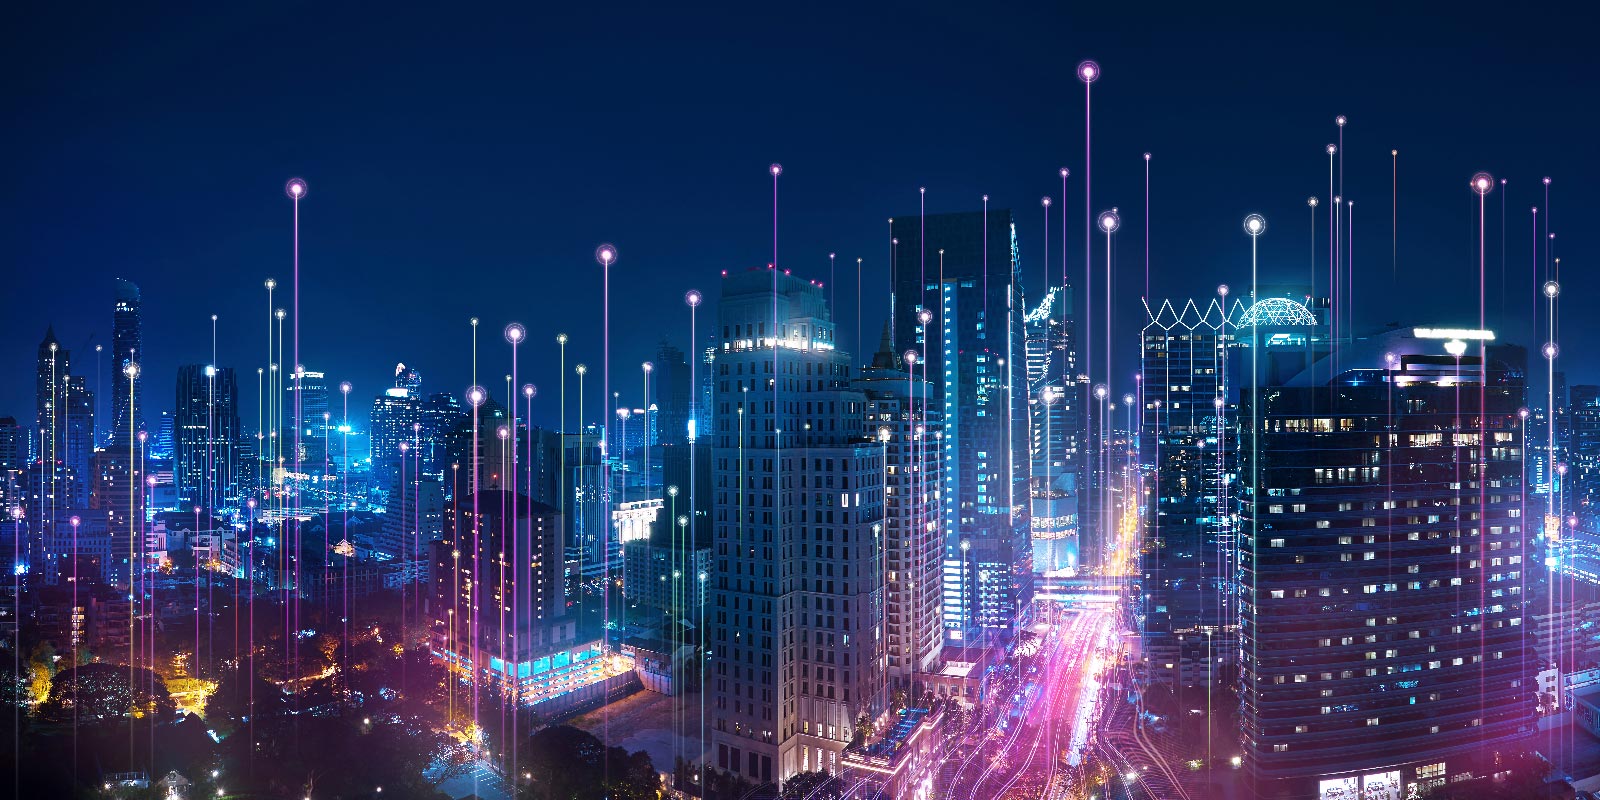 도시에 겹쳐져 연결된 파란색 및 보라색 디지털 라인을 보여주는 밤의 도시 풍경 조감도